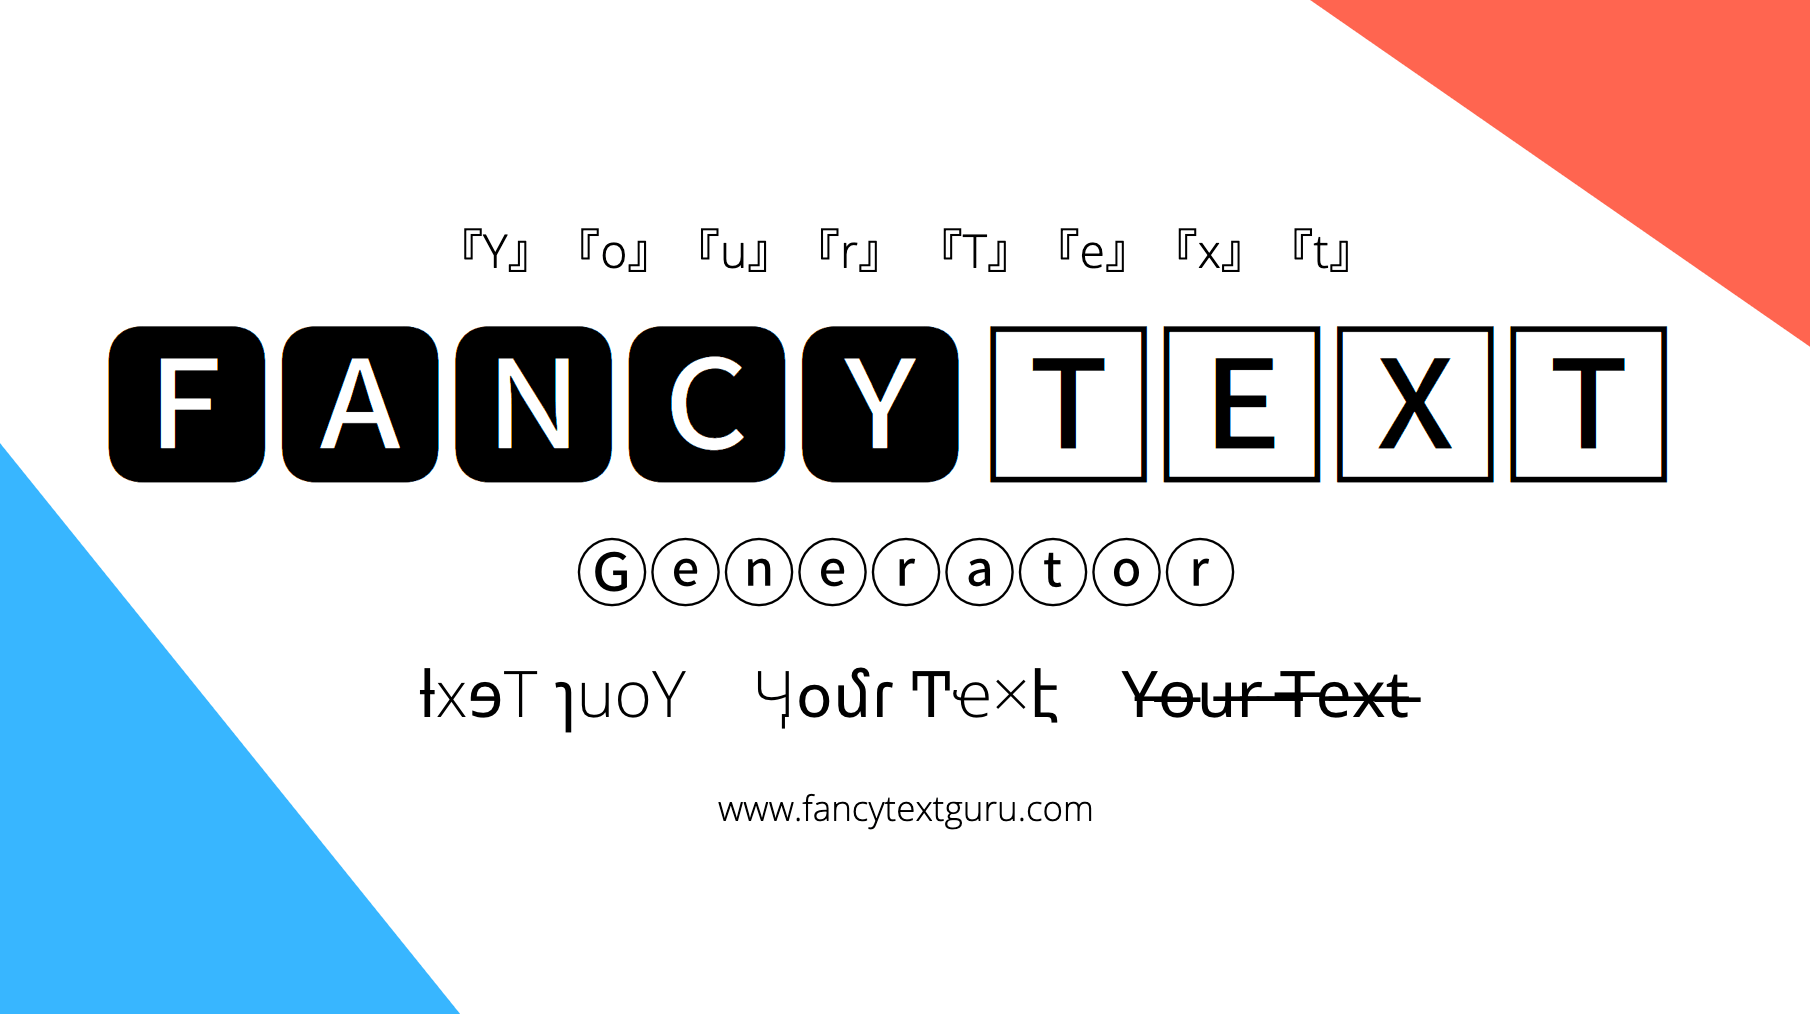 ⚡ Fancy Text Generator ➜ #𝟙😍 ℭ𝔬𝔬𝔩 & Ⓢⓣⓨⓛⓘⓢⓗ 𝙁𝙤𝙣𝙩𝙨